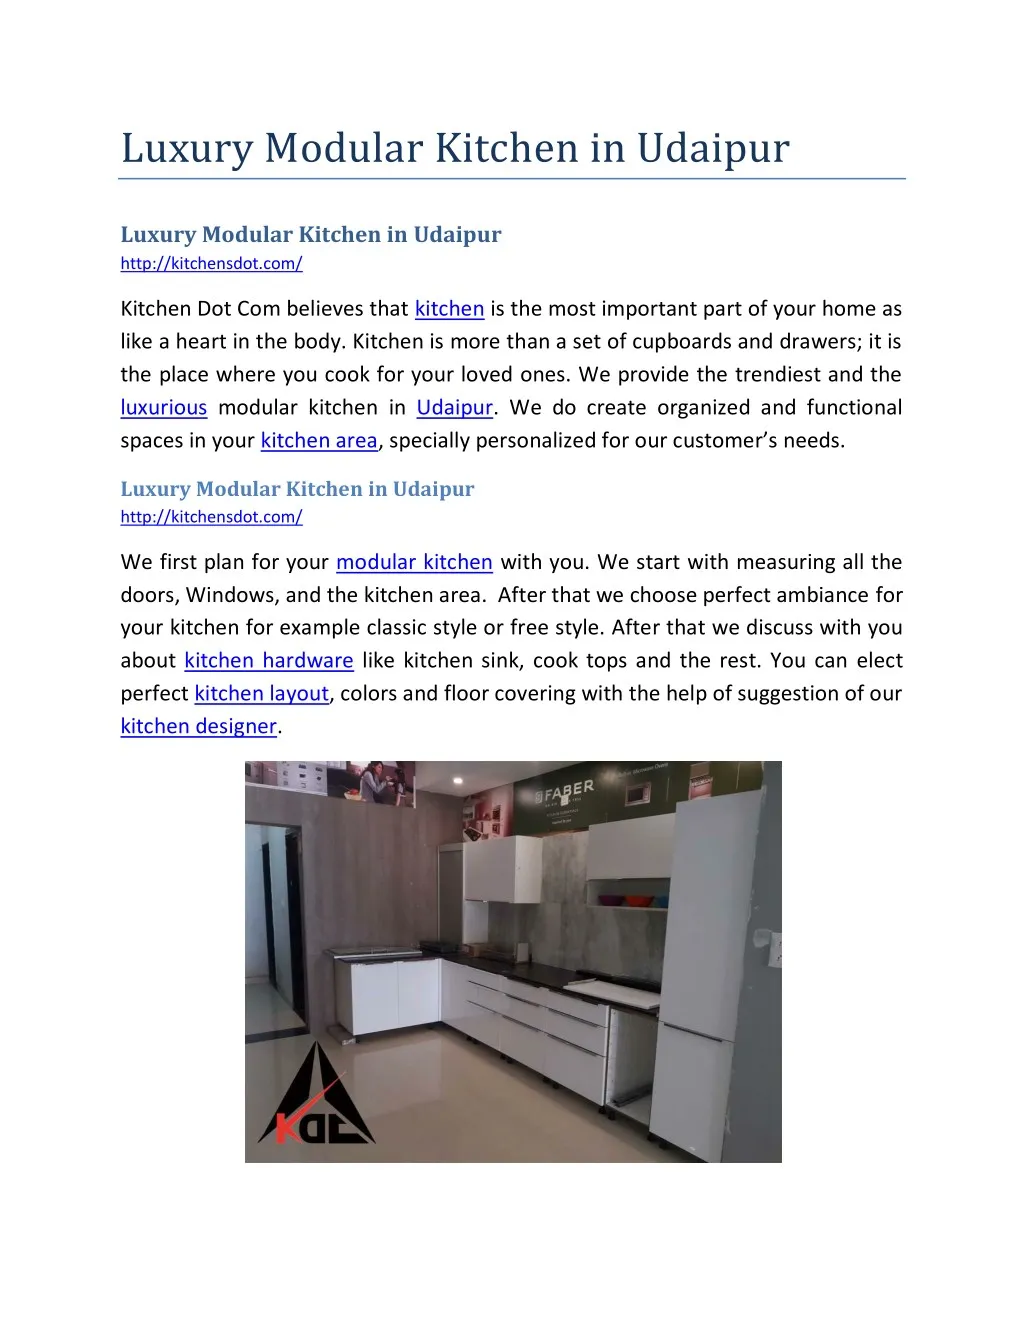 luxury modular kitchen in udaipur